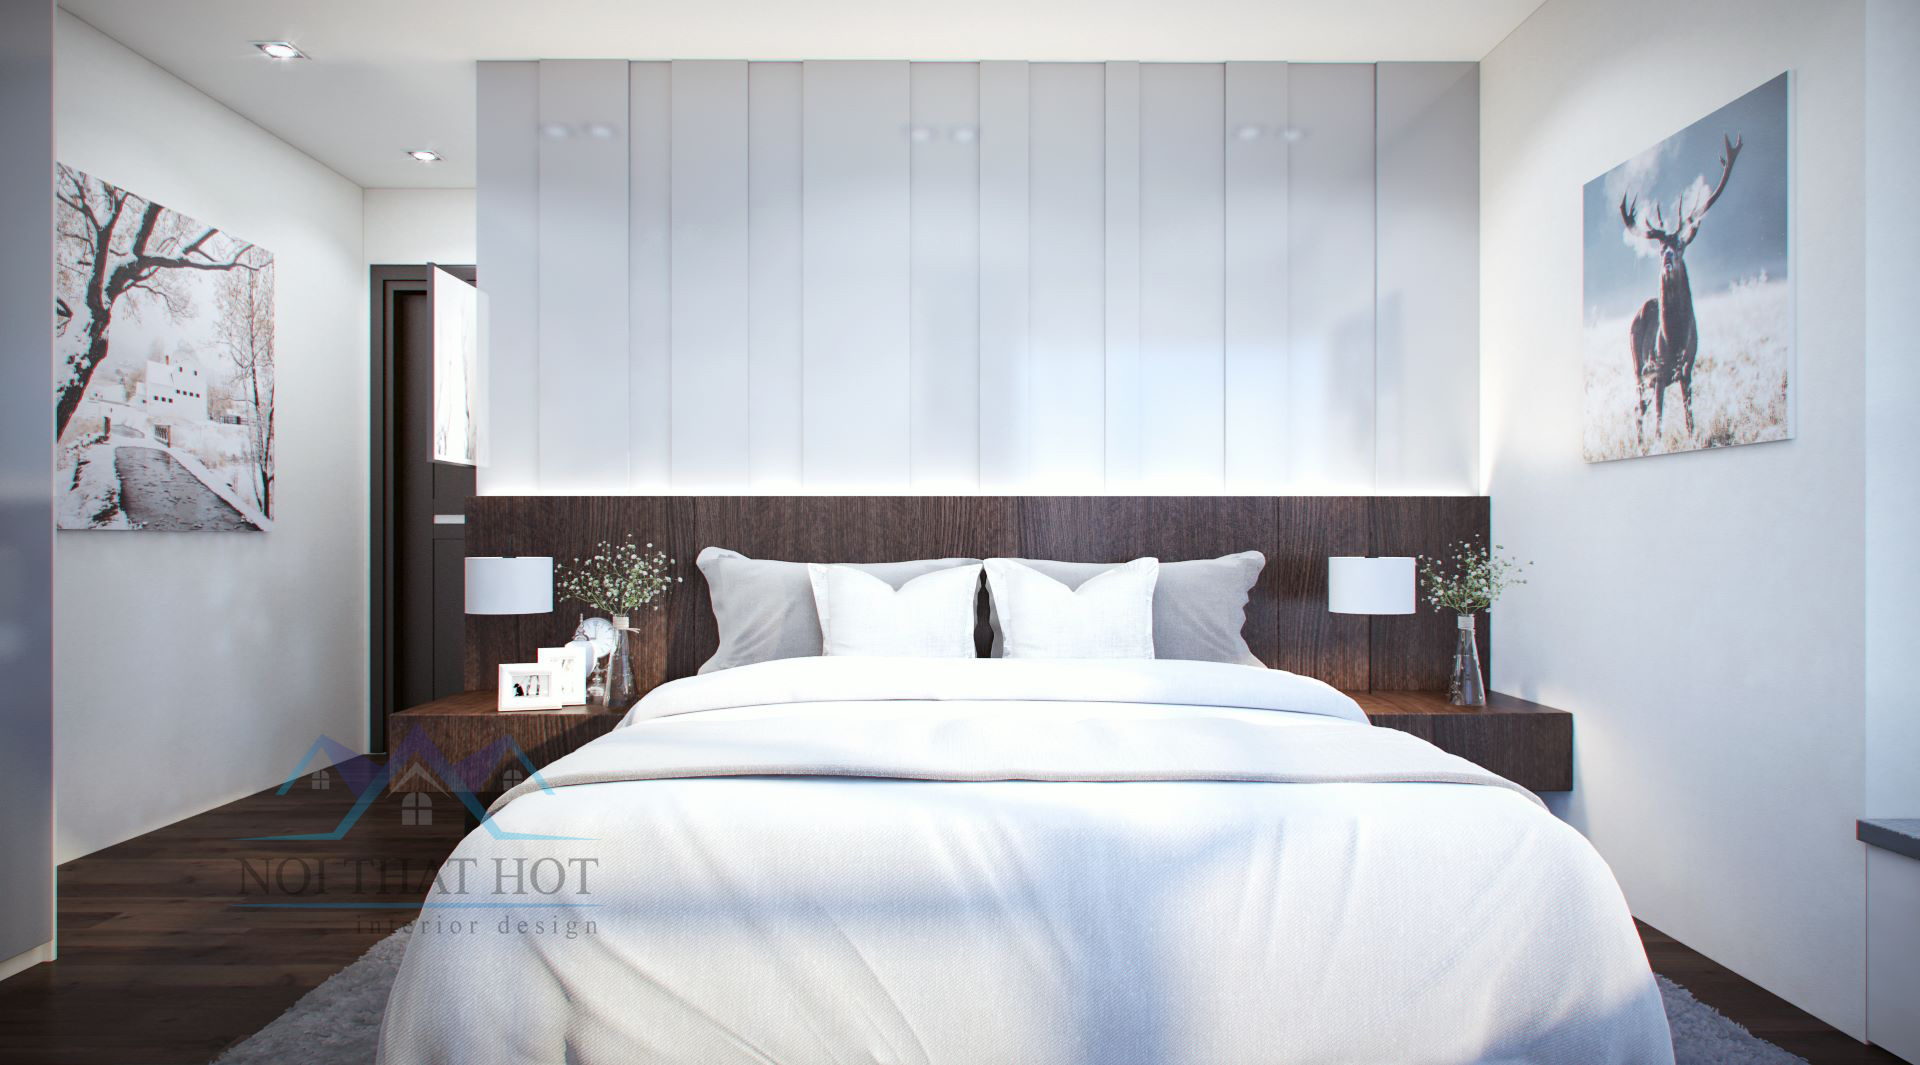 thiết kế nội thất chung cư hai phòng ngủ đơn giản, sang trọng và lịch lãm